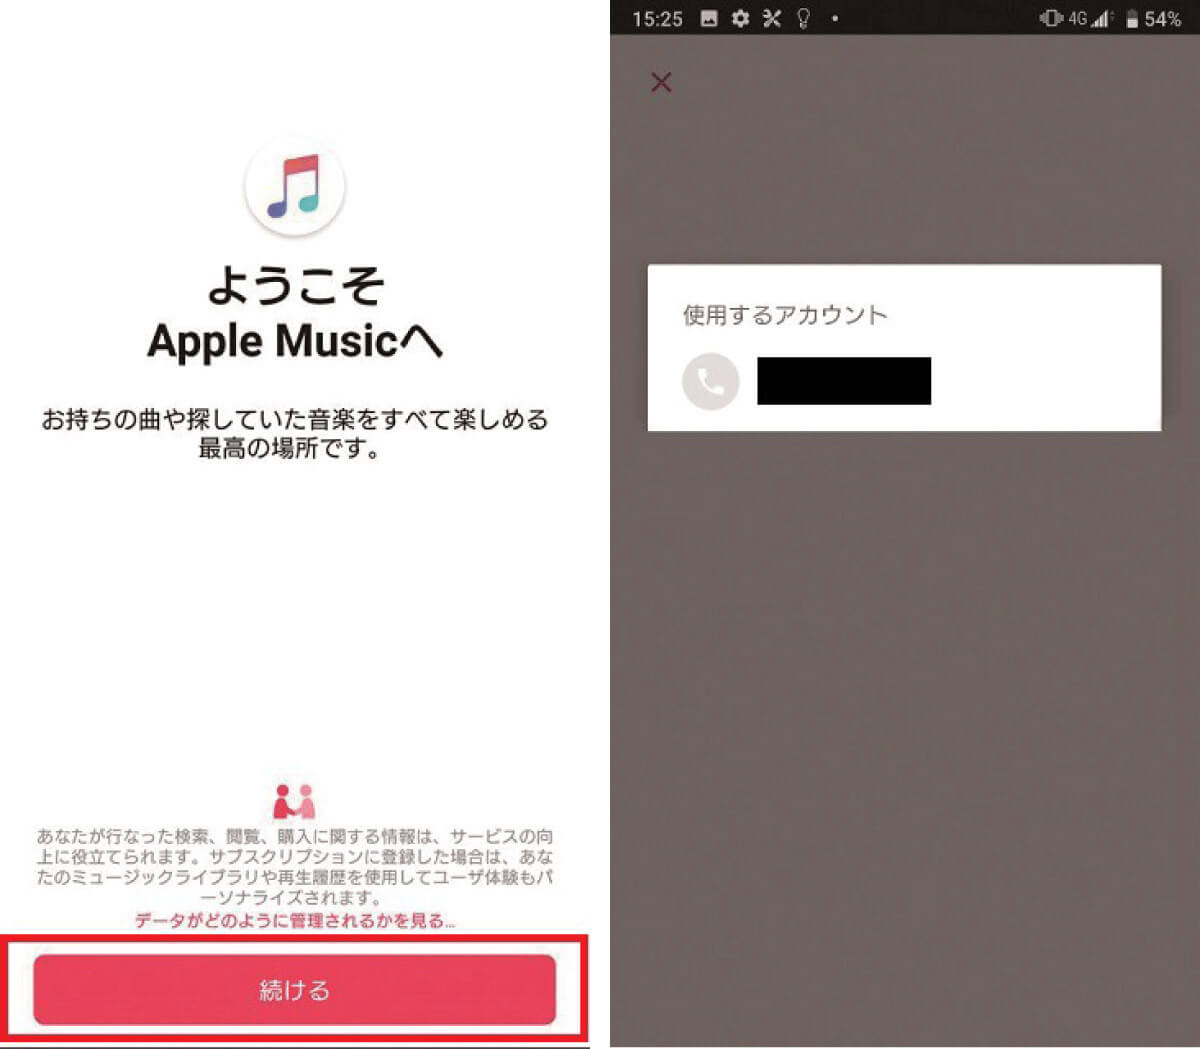 auもしくはUQ mobileからApple Musicに申し込む3